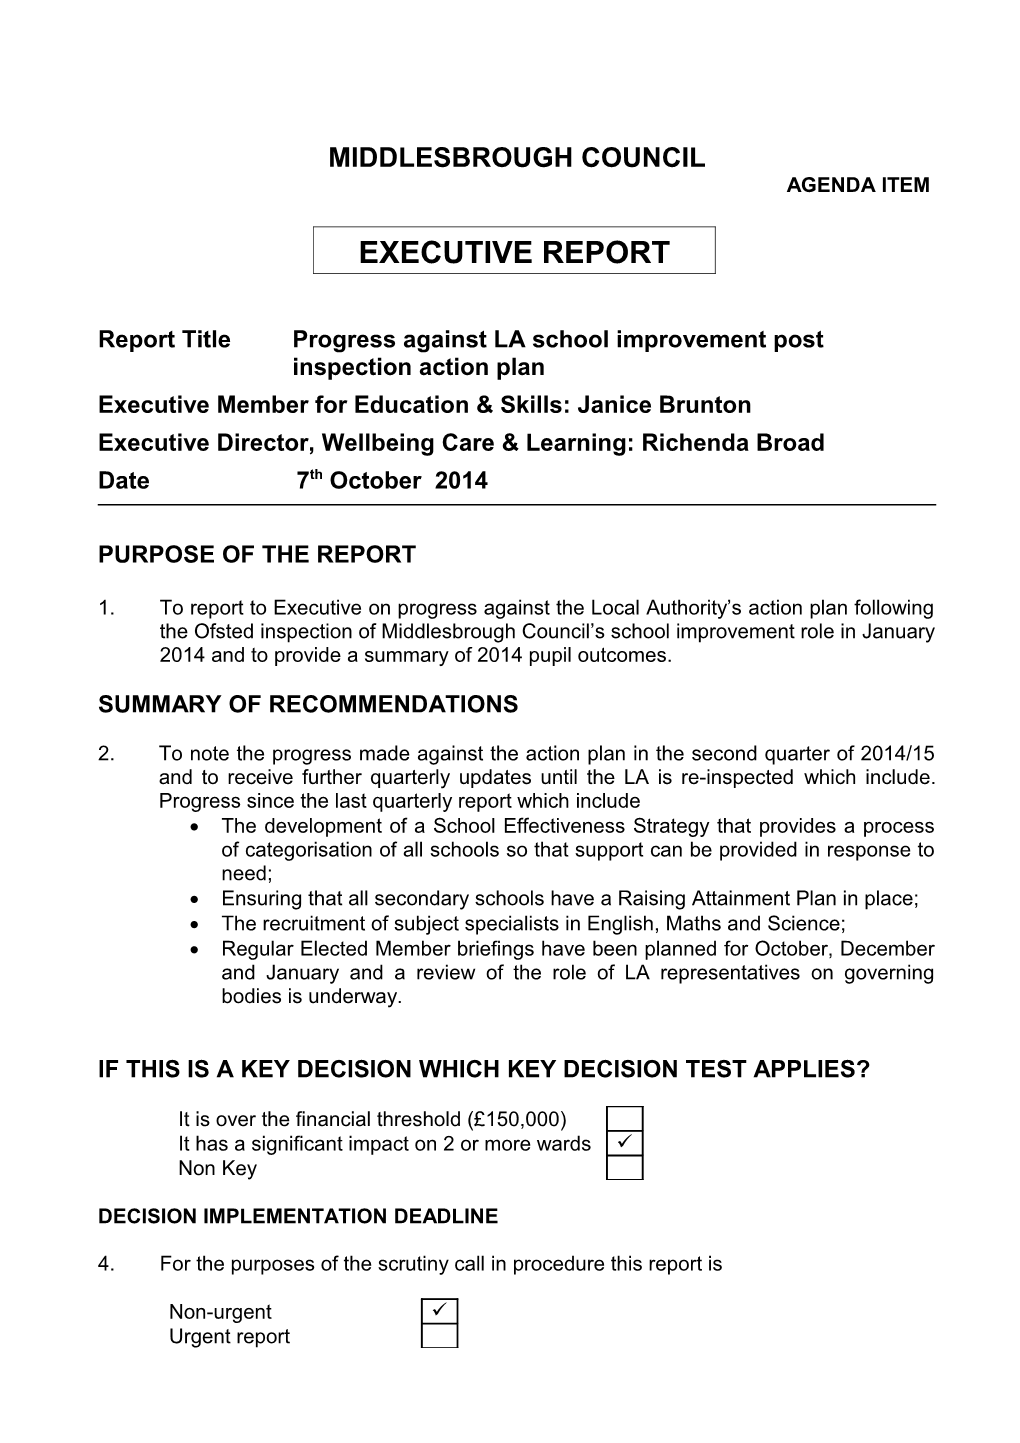 Report Title Progress Against LA School Improvementpost Inspection Action Plan